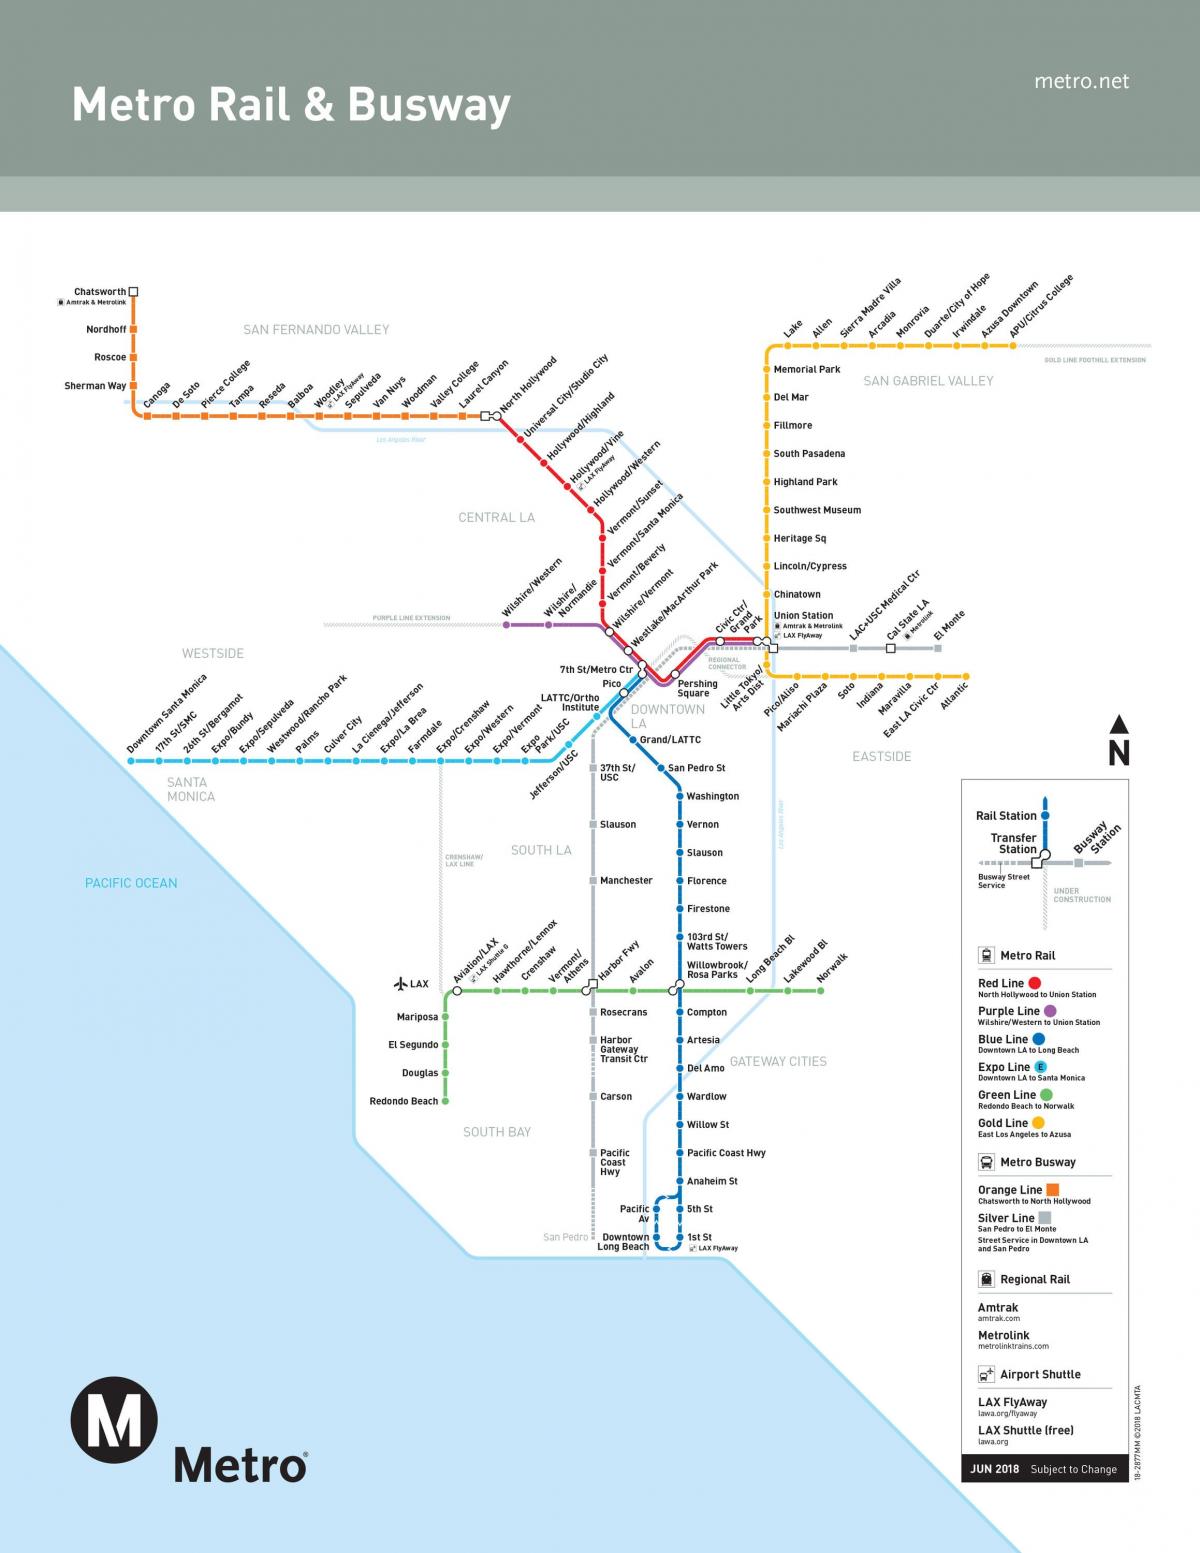 ロサンゼルスの地下鉄駅の地図